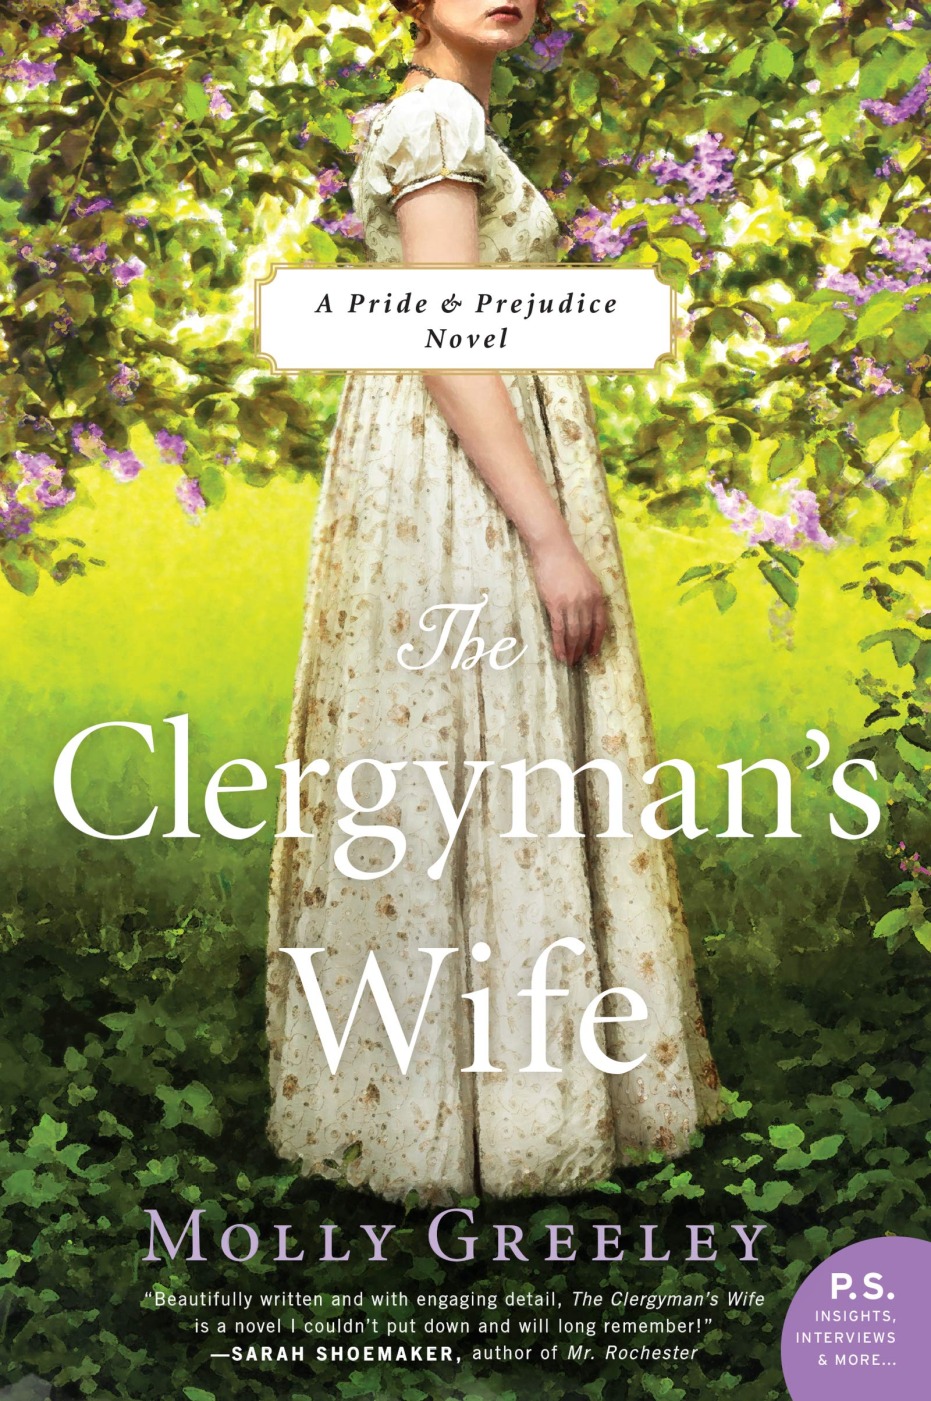 The Clergymans Wife: A Pride & Prejudice Novel